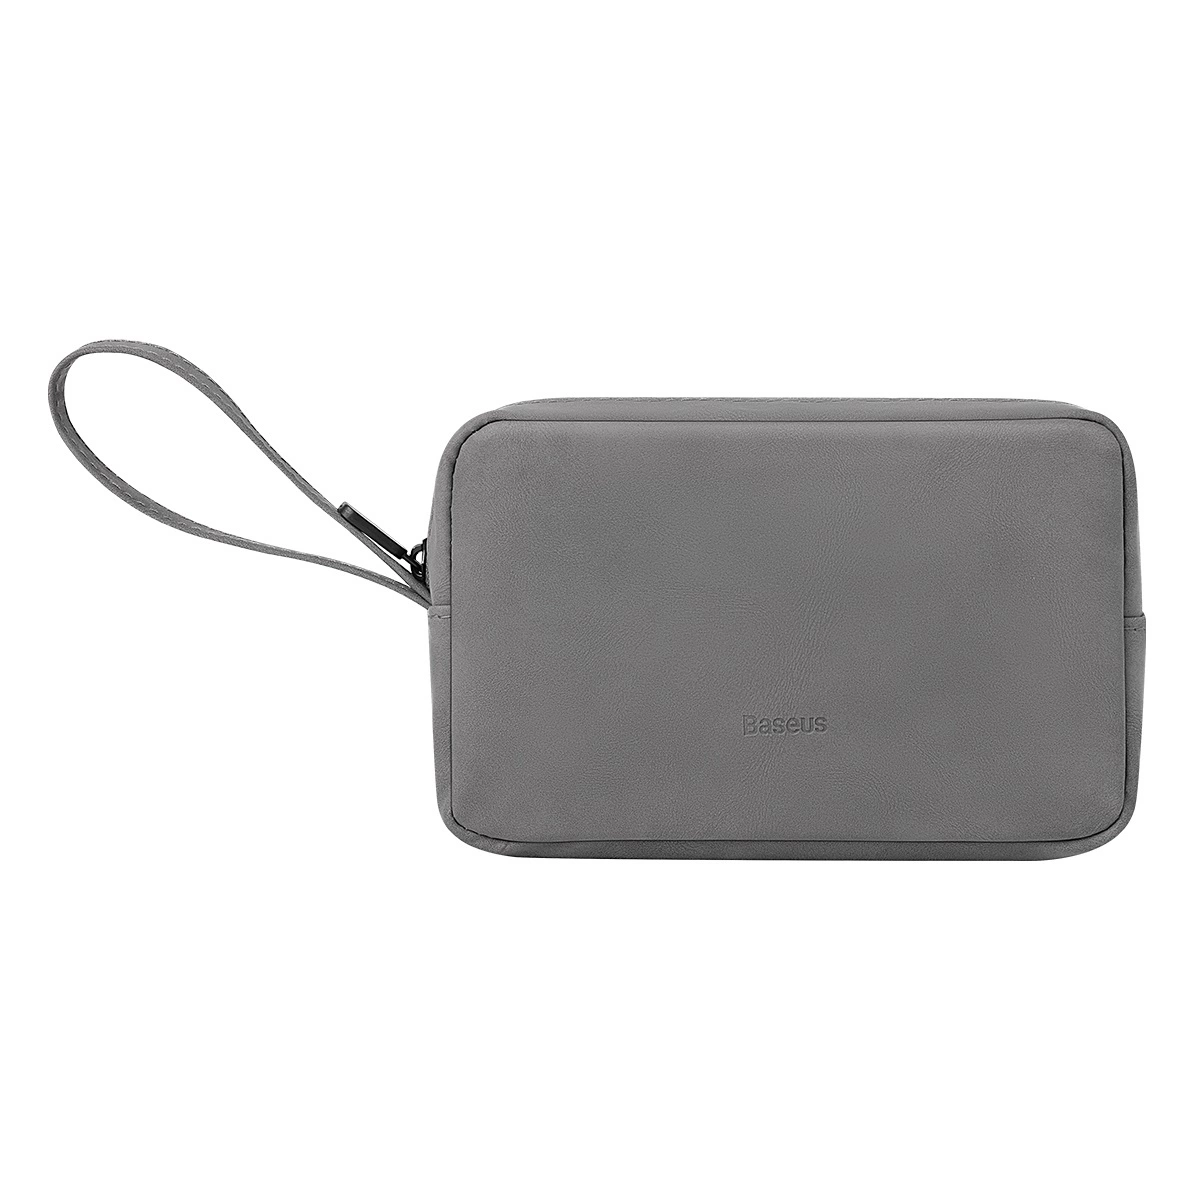 Baseus EasyJourney Series malá cestovní taška pouzdro na telefon sluchátka a další drobné předměty šedá